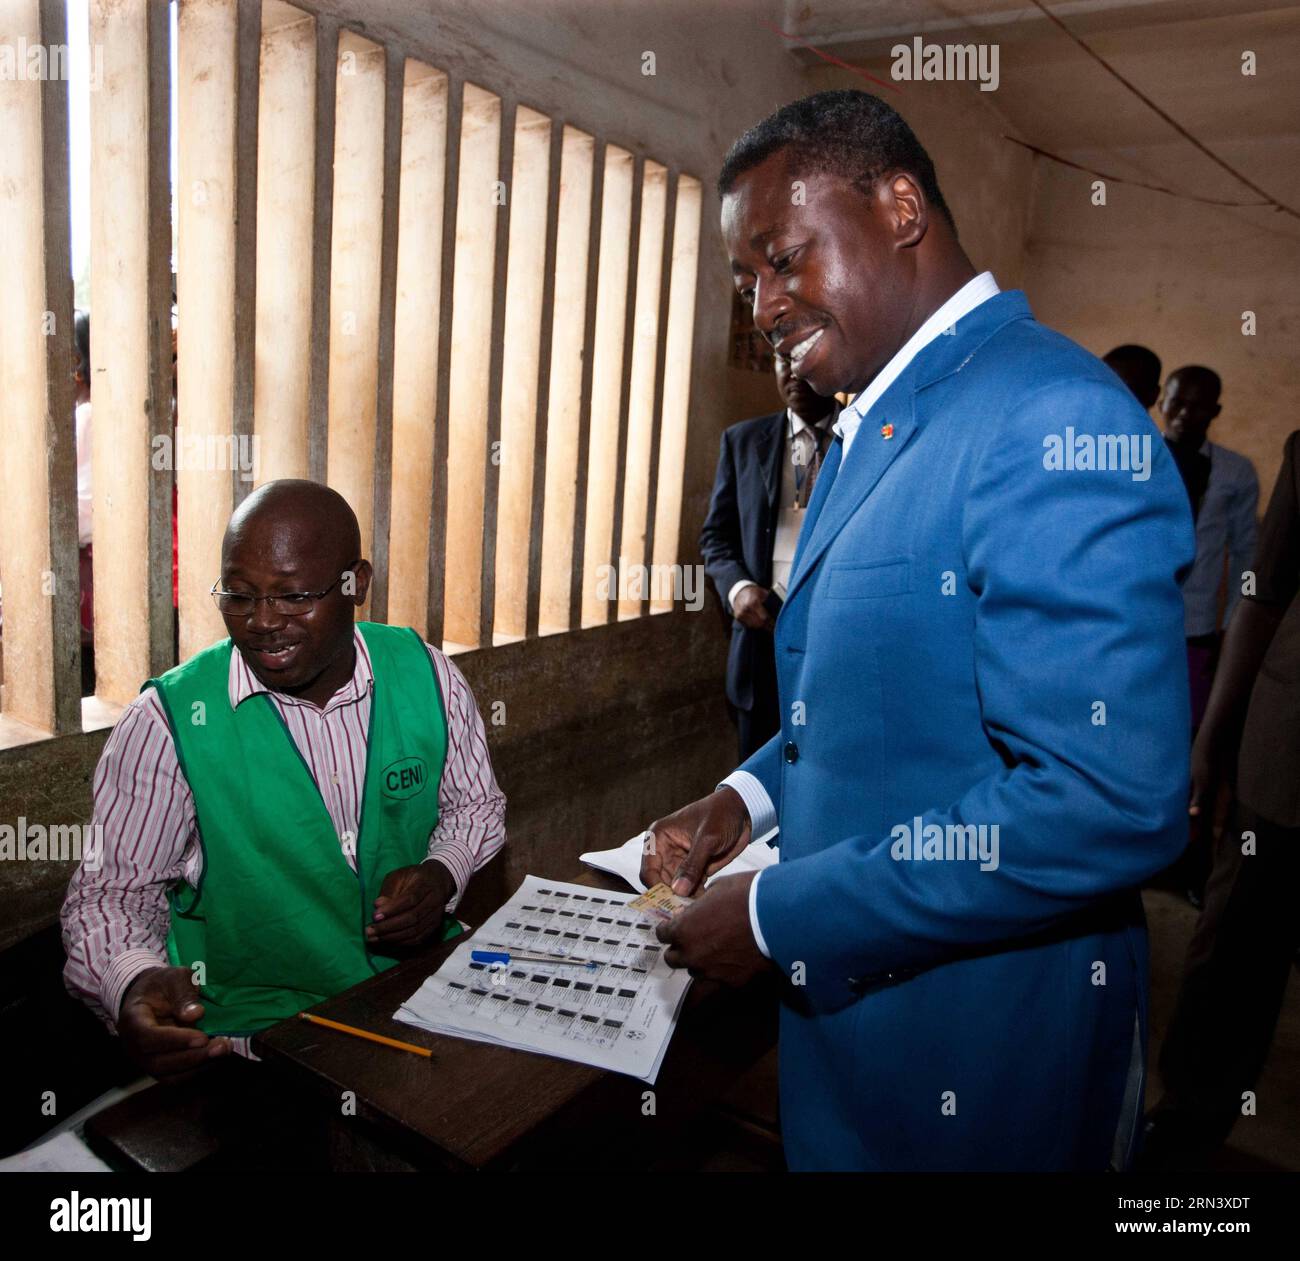 (150428) -- LOME, 28 avril 2015 -- une photo prise le 25 avril 2015 montre le président sortant du Togo Faure Essozimna Gnassingbe qui a voté dans une gare lors de l'élection présidentielle à Lomé, capitale du Togo. Faure Essozimna Gnassingbe a remporté l élection présidentielle du pays lors des votes tenus samedi, selon les résultats préliminaires de mardi. TOGO-LOME-PRESIDENTIAL ELECTION-FAURE-VICTORY LixJing PUBLICATIONxNOTxINxCHN Lomé avril 28 2015 la photo prise LE 25 2015 avril montre le président sortant du Togo Faure Essozimna Gnassingbe en train de lancer son bulletin de vote À une gare pendant le Th Banque D'Images